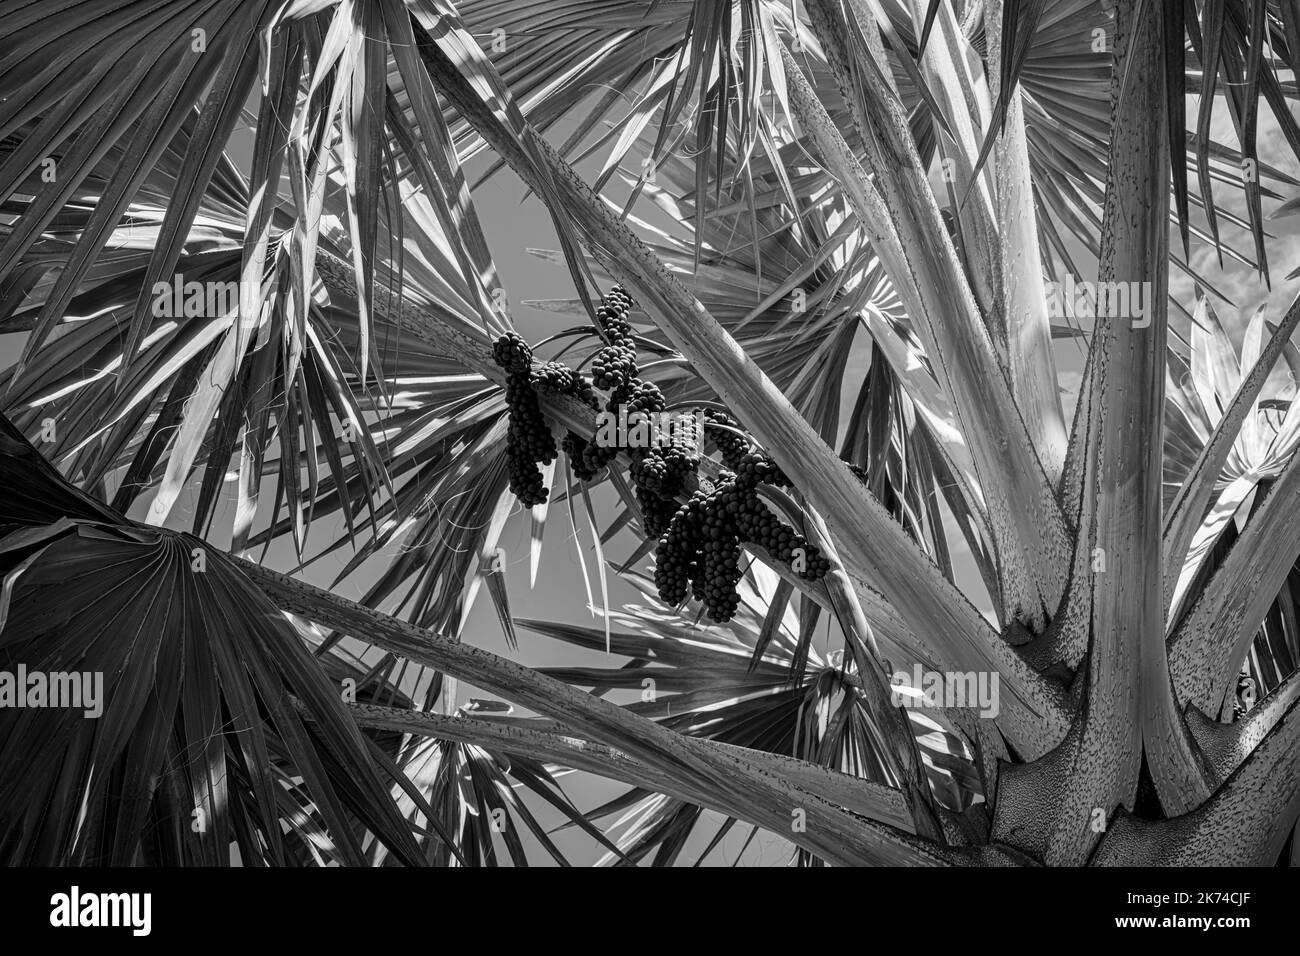 Alberi di palma sull'isola dei Caraibi francesi di Guadalupa Foto Stock